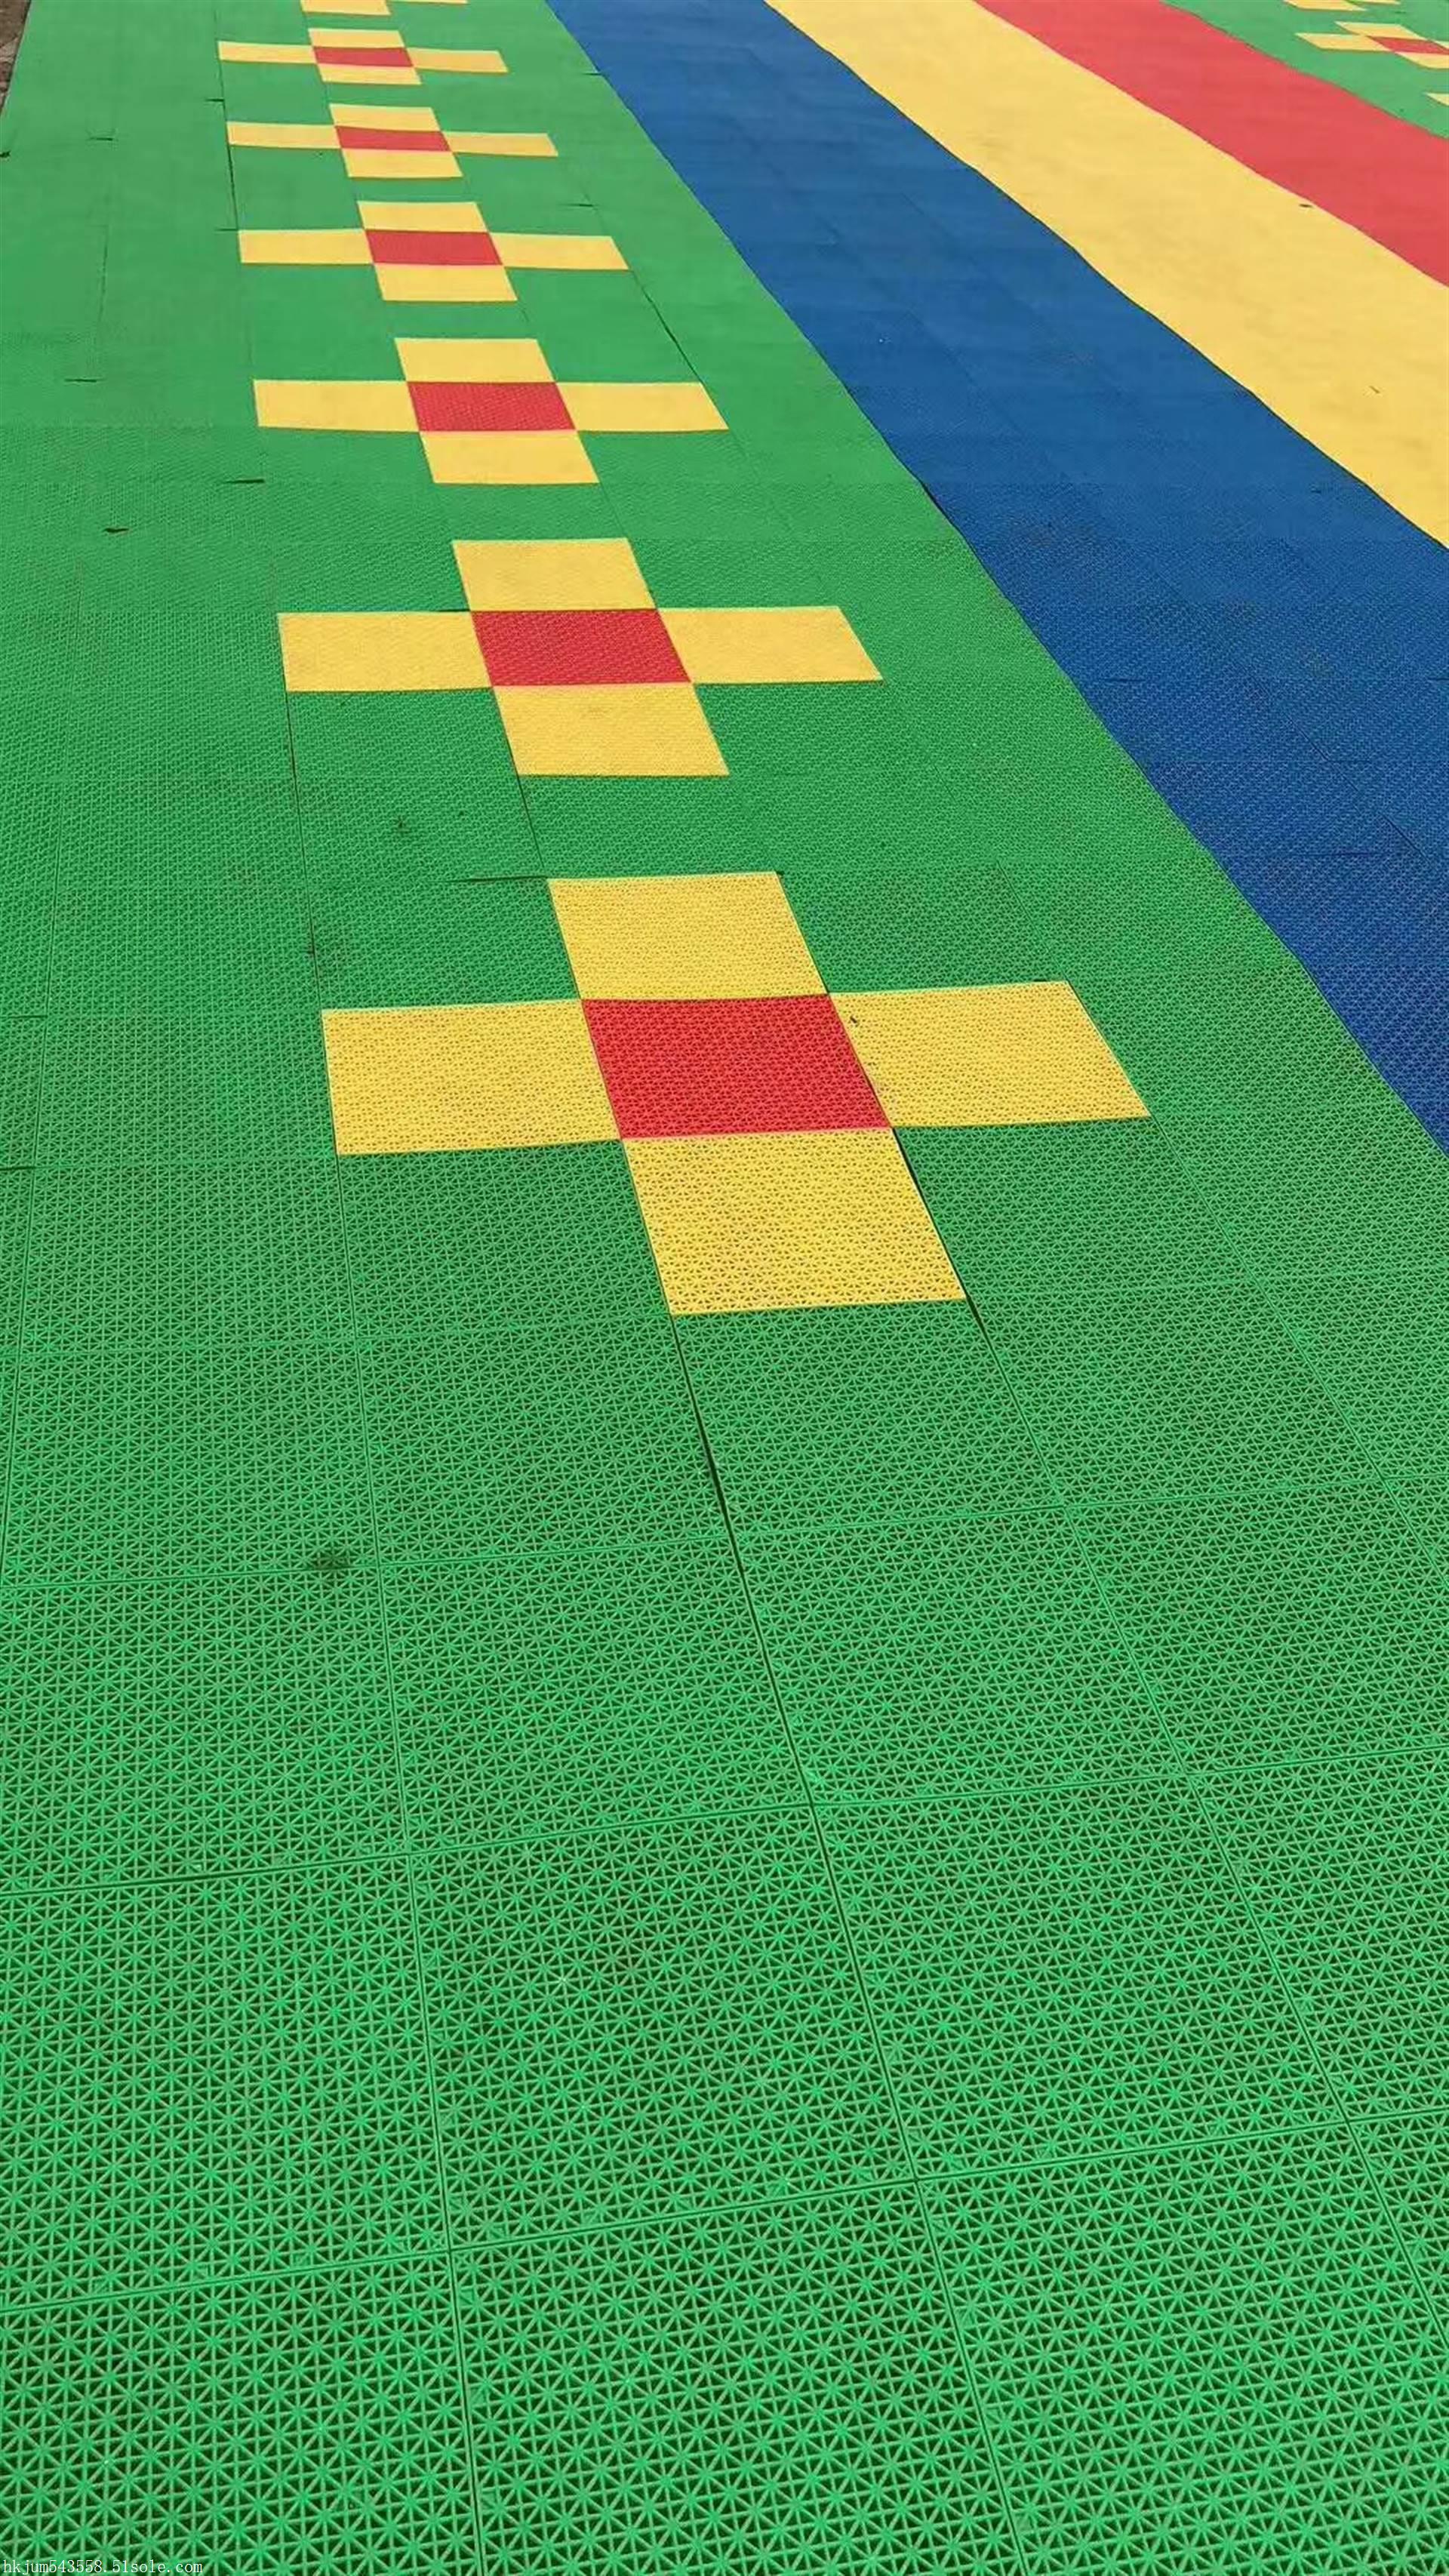 广州悬浮拼装地板价格幼儿园悬浮拼装地板pvc运动地板施工方案